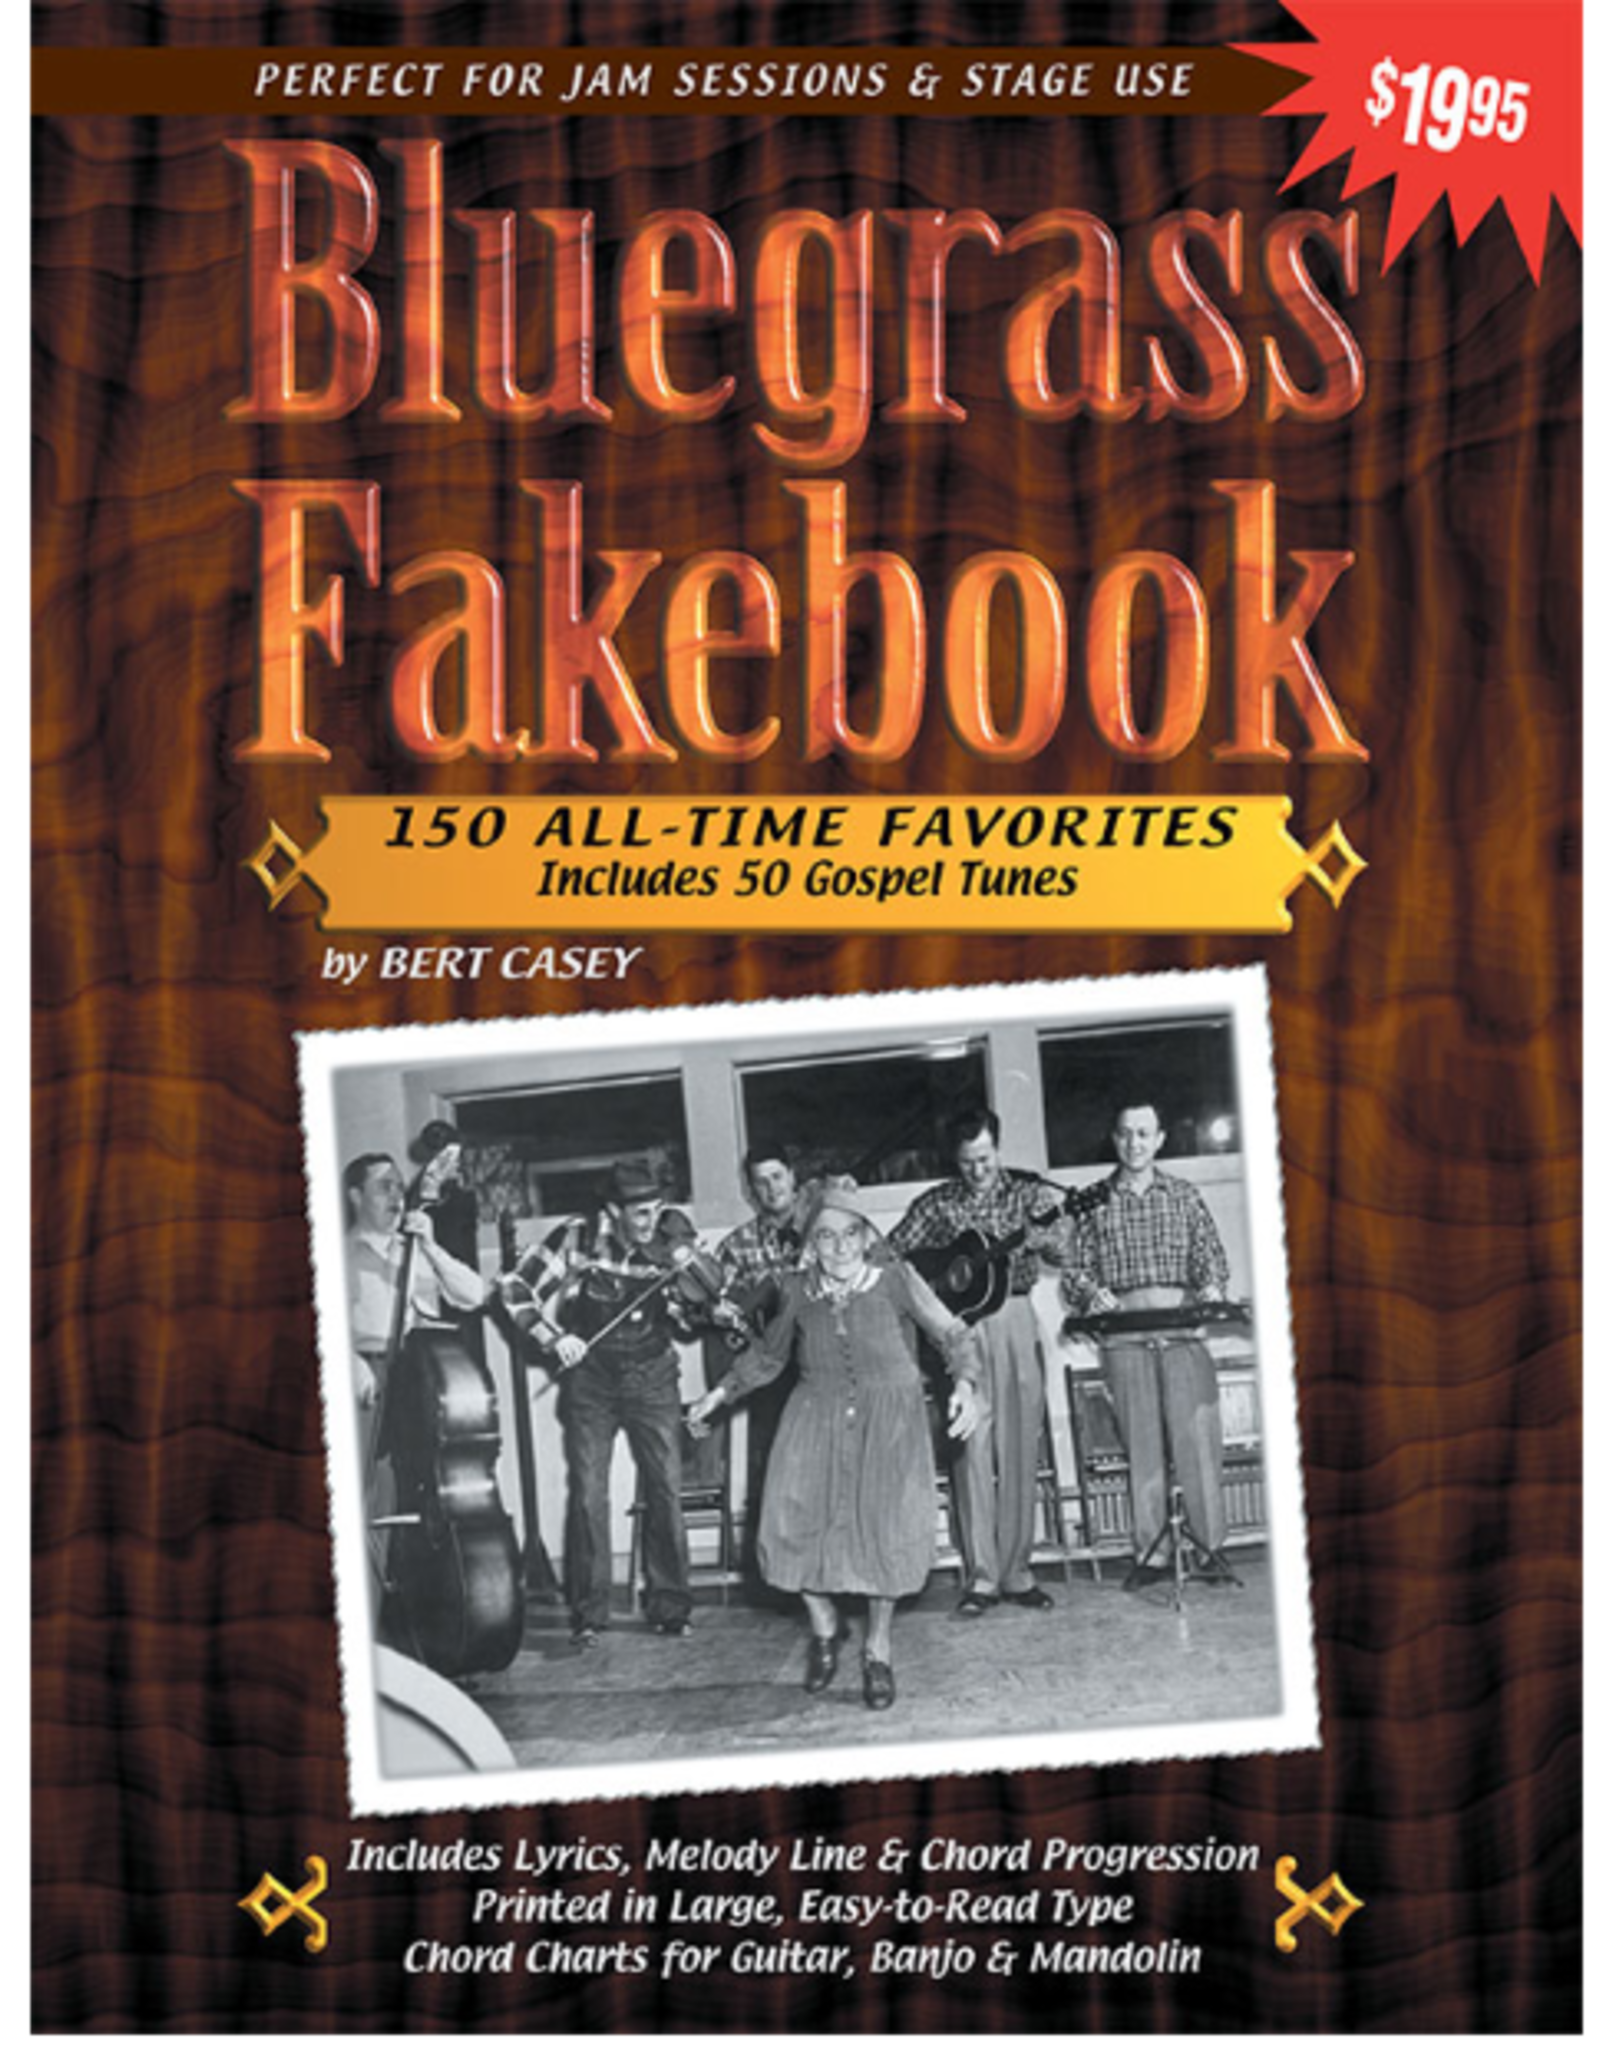 Watch & Learn Watch & Learn Bluegrass Fakebook